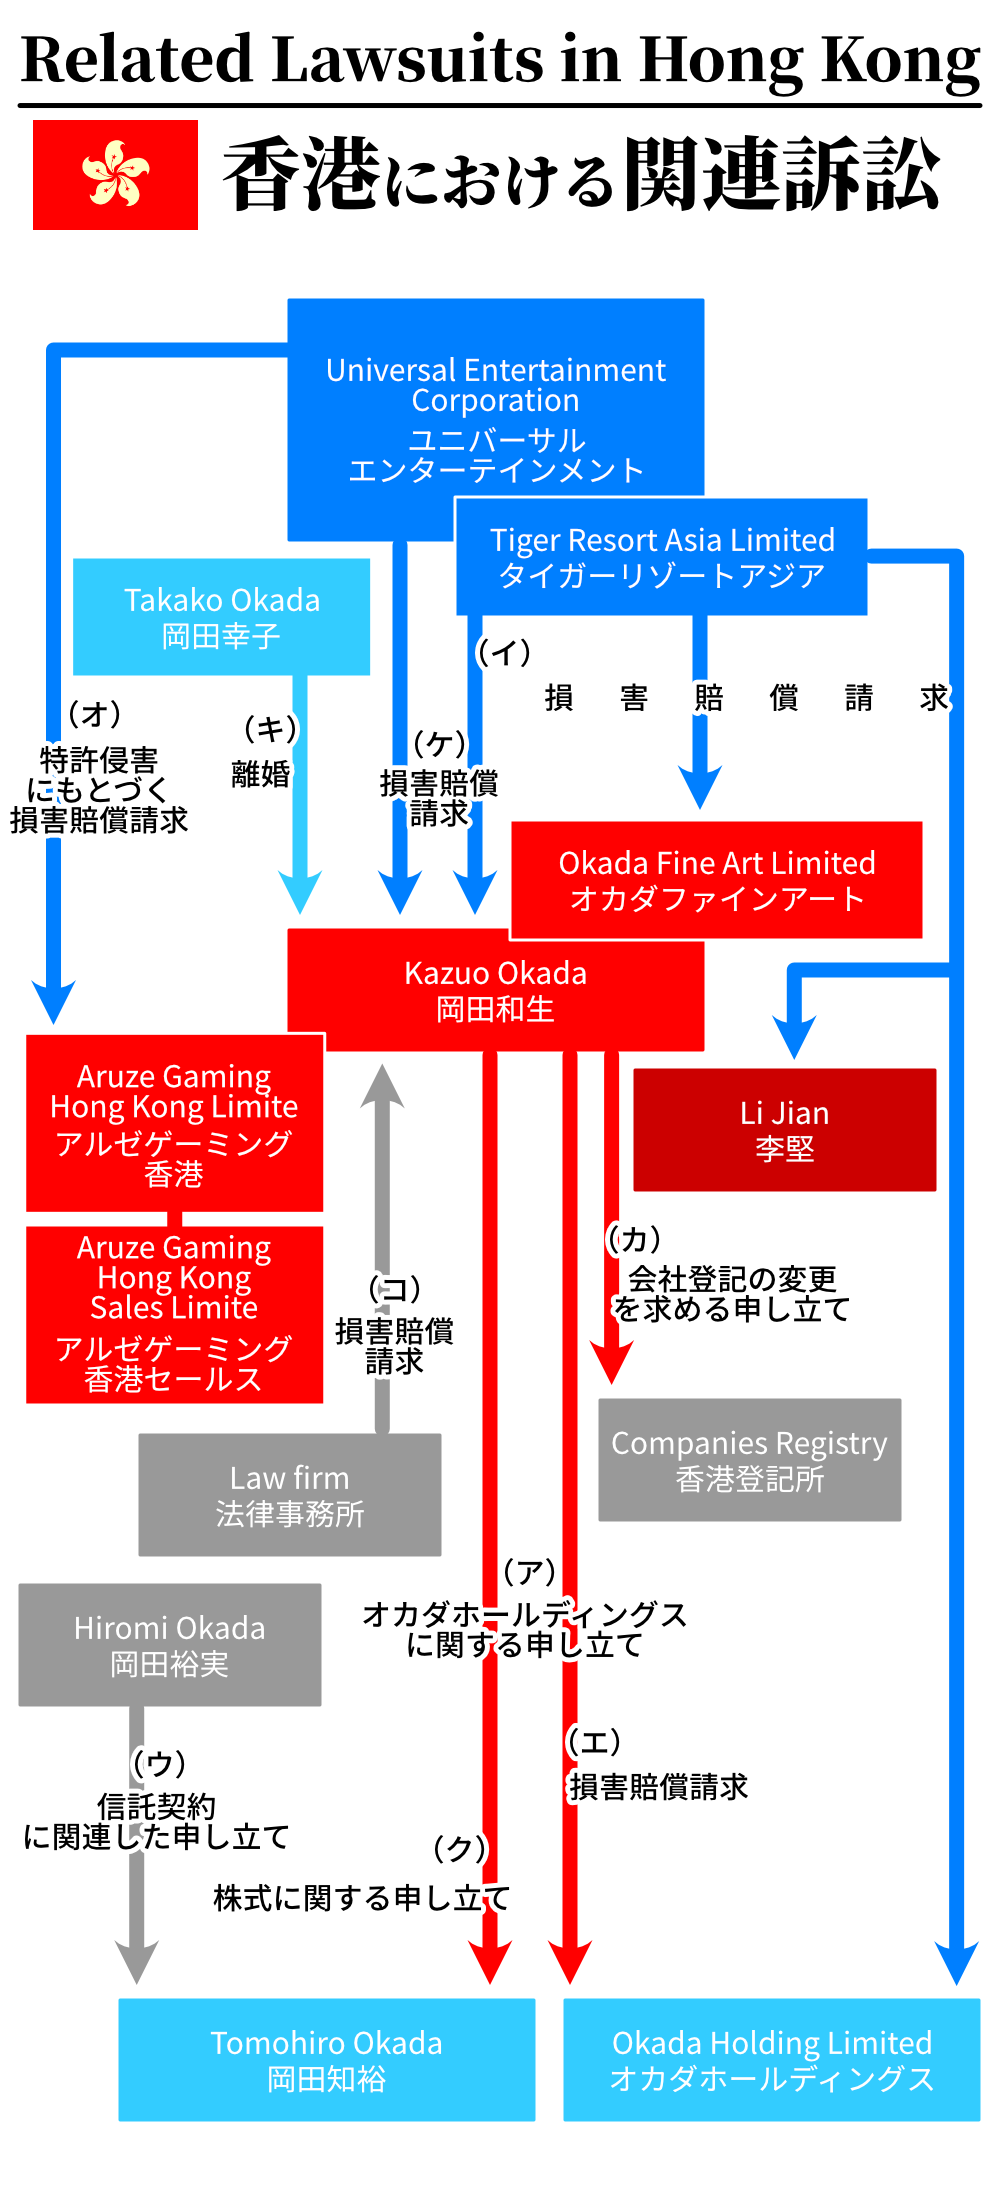 ユニバーサルエンターテインメントと岡田和生に関連する訴訟の相関図(香港)